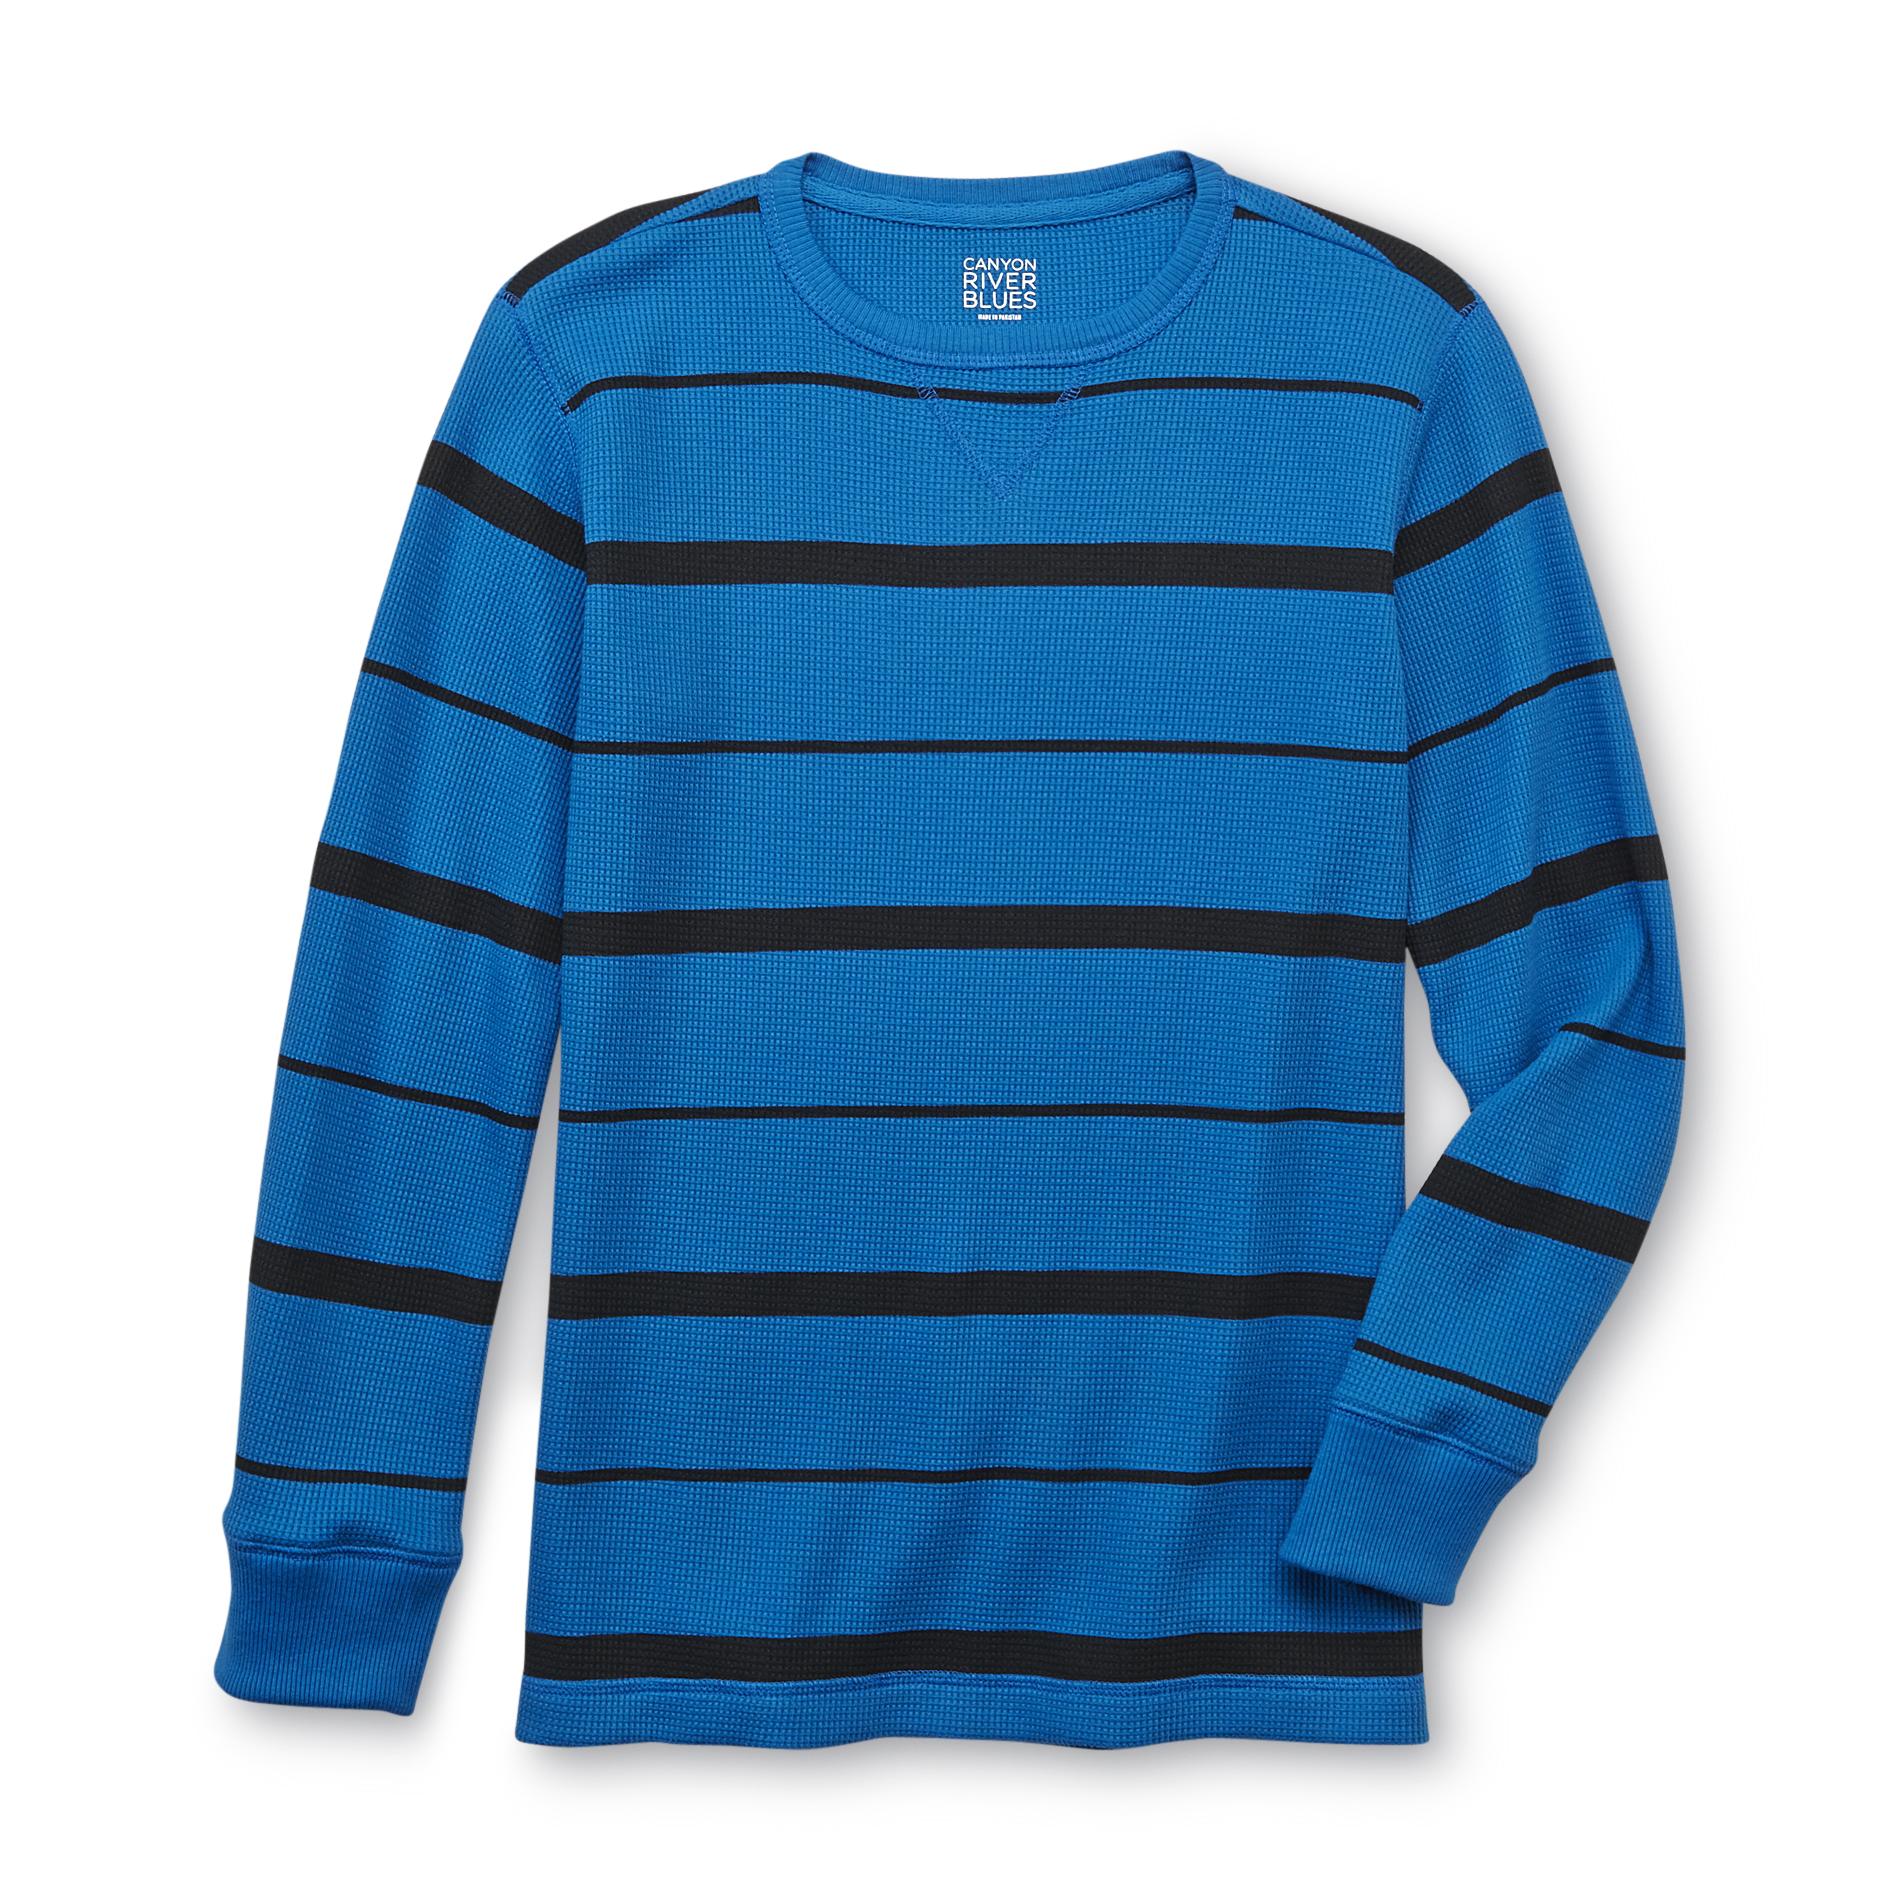 Canyon River Blues Boy's Thermal Shirt - Striped